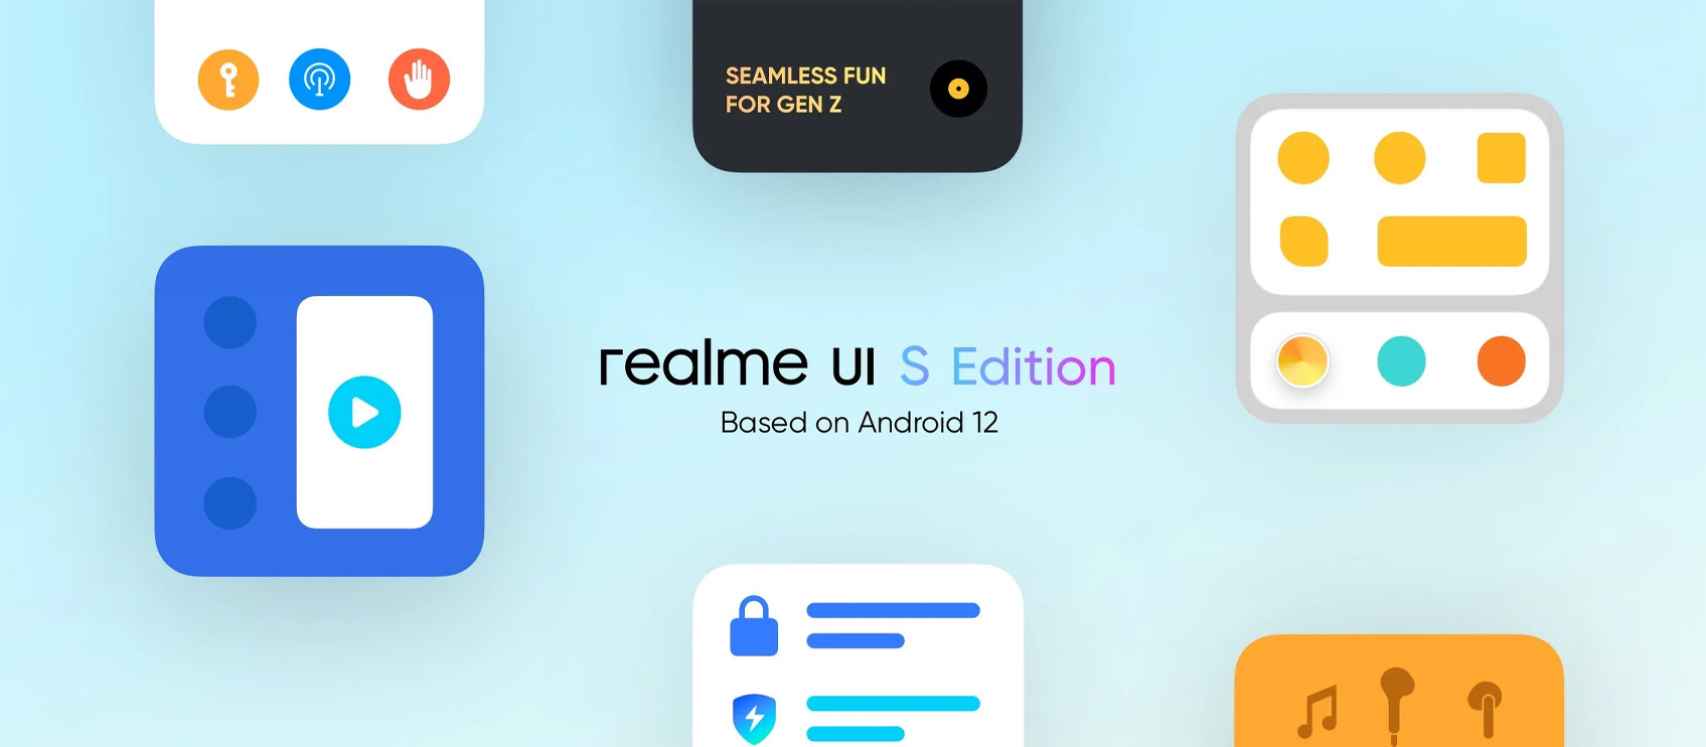 Realme UI S Edition